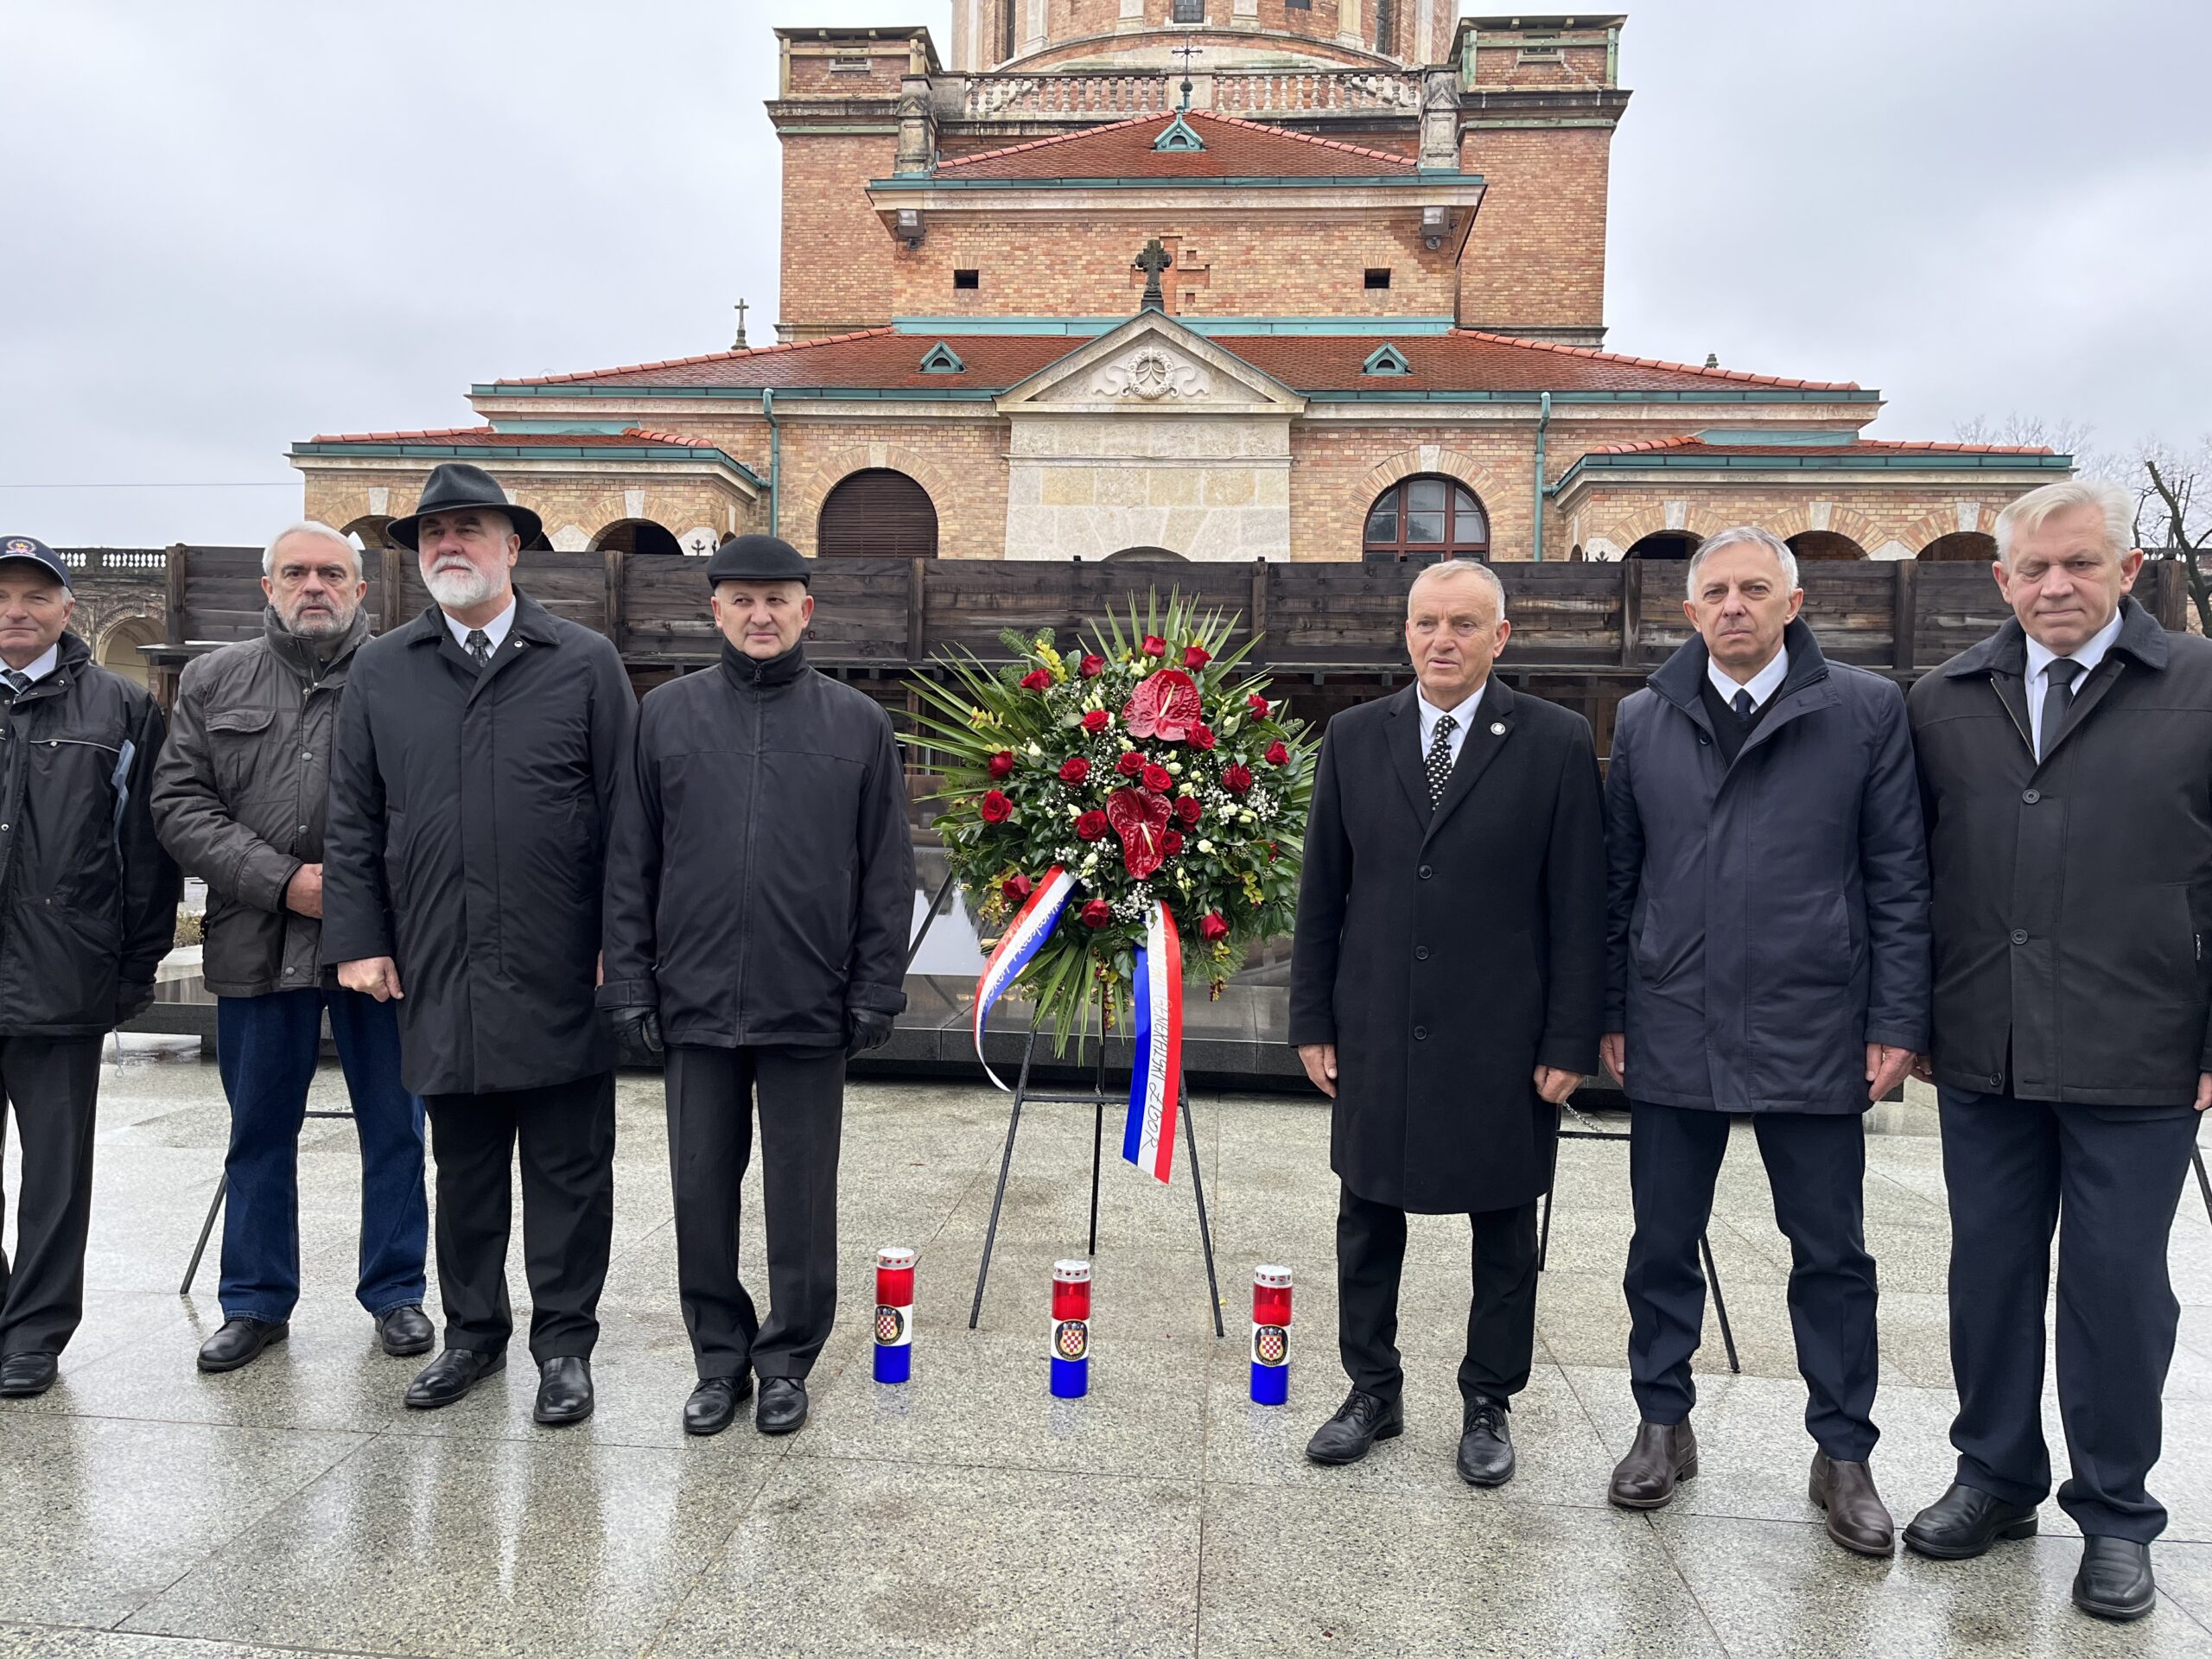 Obilježavanje godišnjice smrti prvog hrvatskog predsjednika dr. Franje Tuđmana